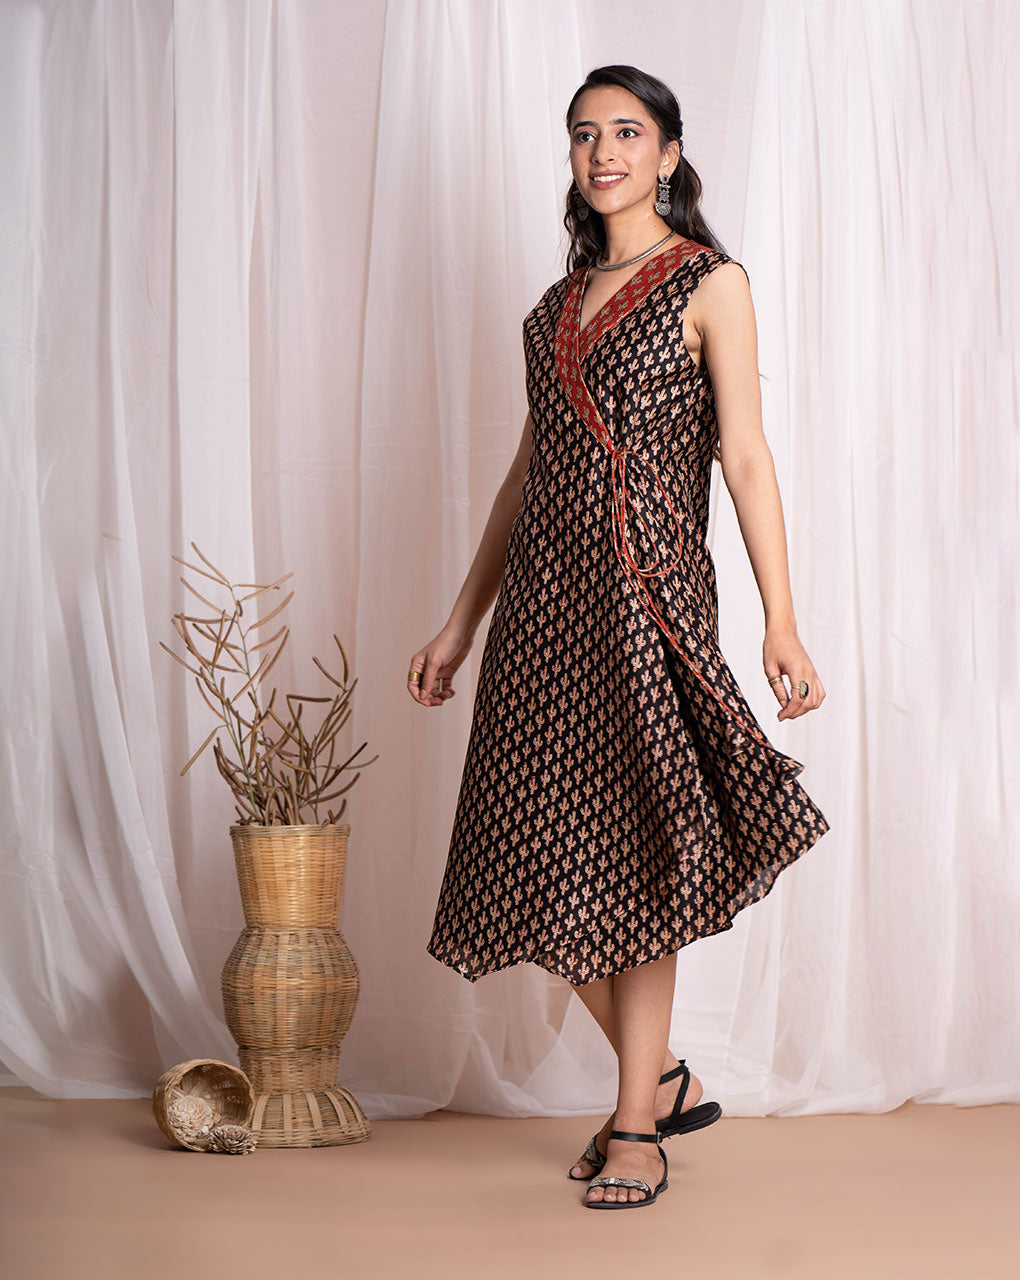 Swetchha Wraparound Dress - Fabriclore.com